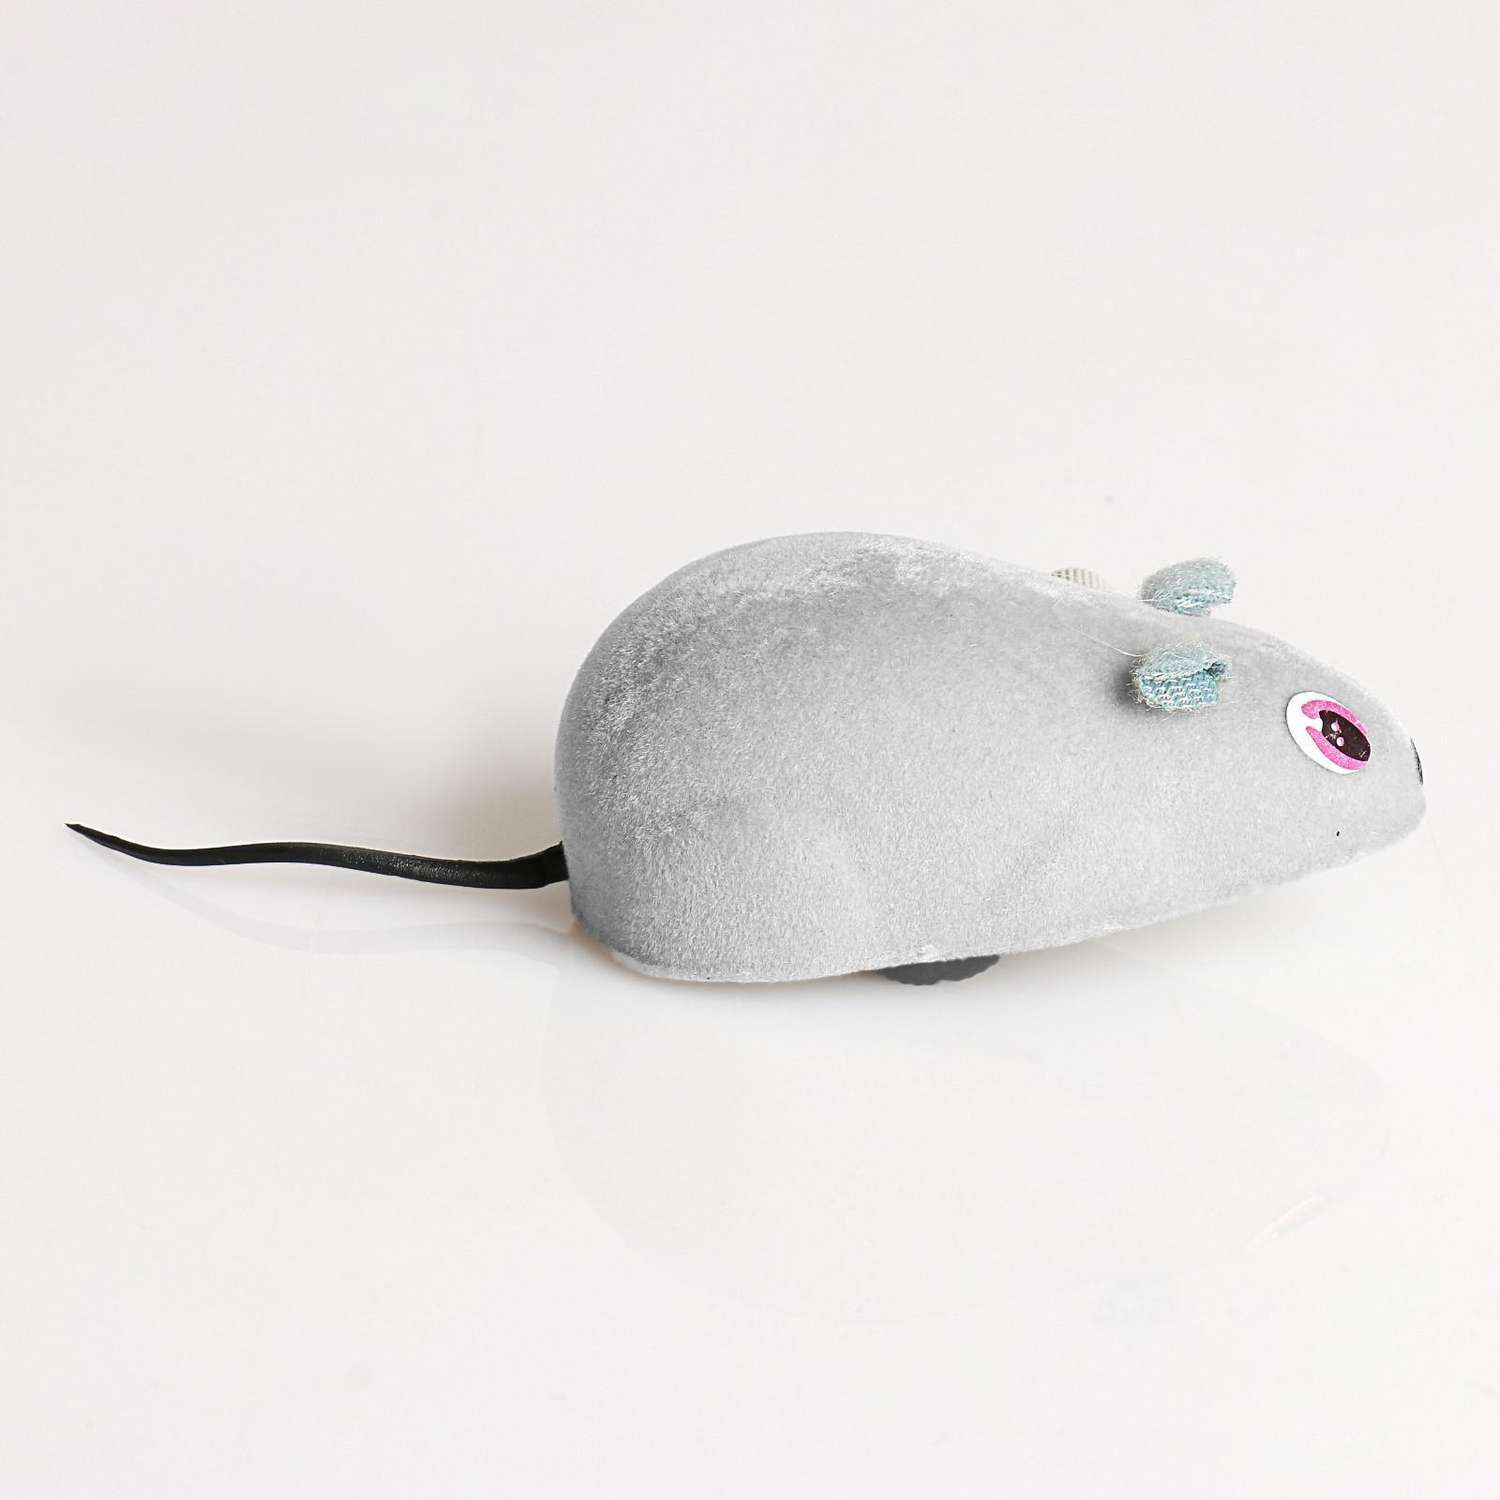 Мышь заводная Пижон 7 см серая - фото 2